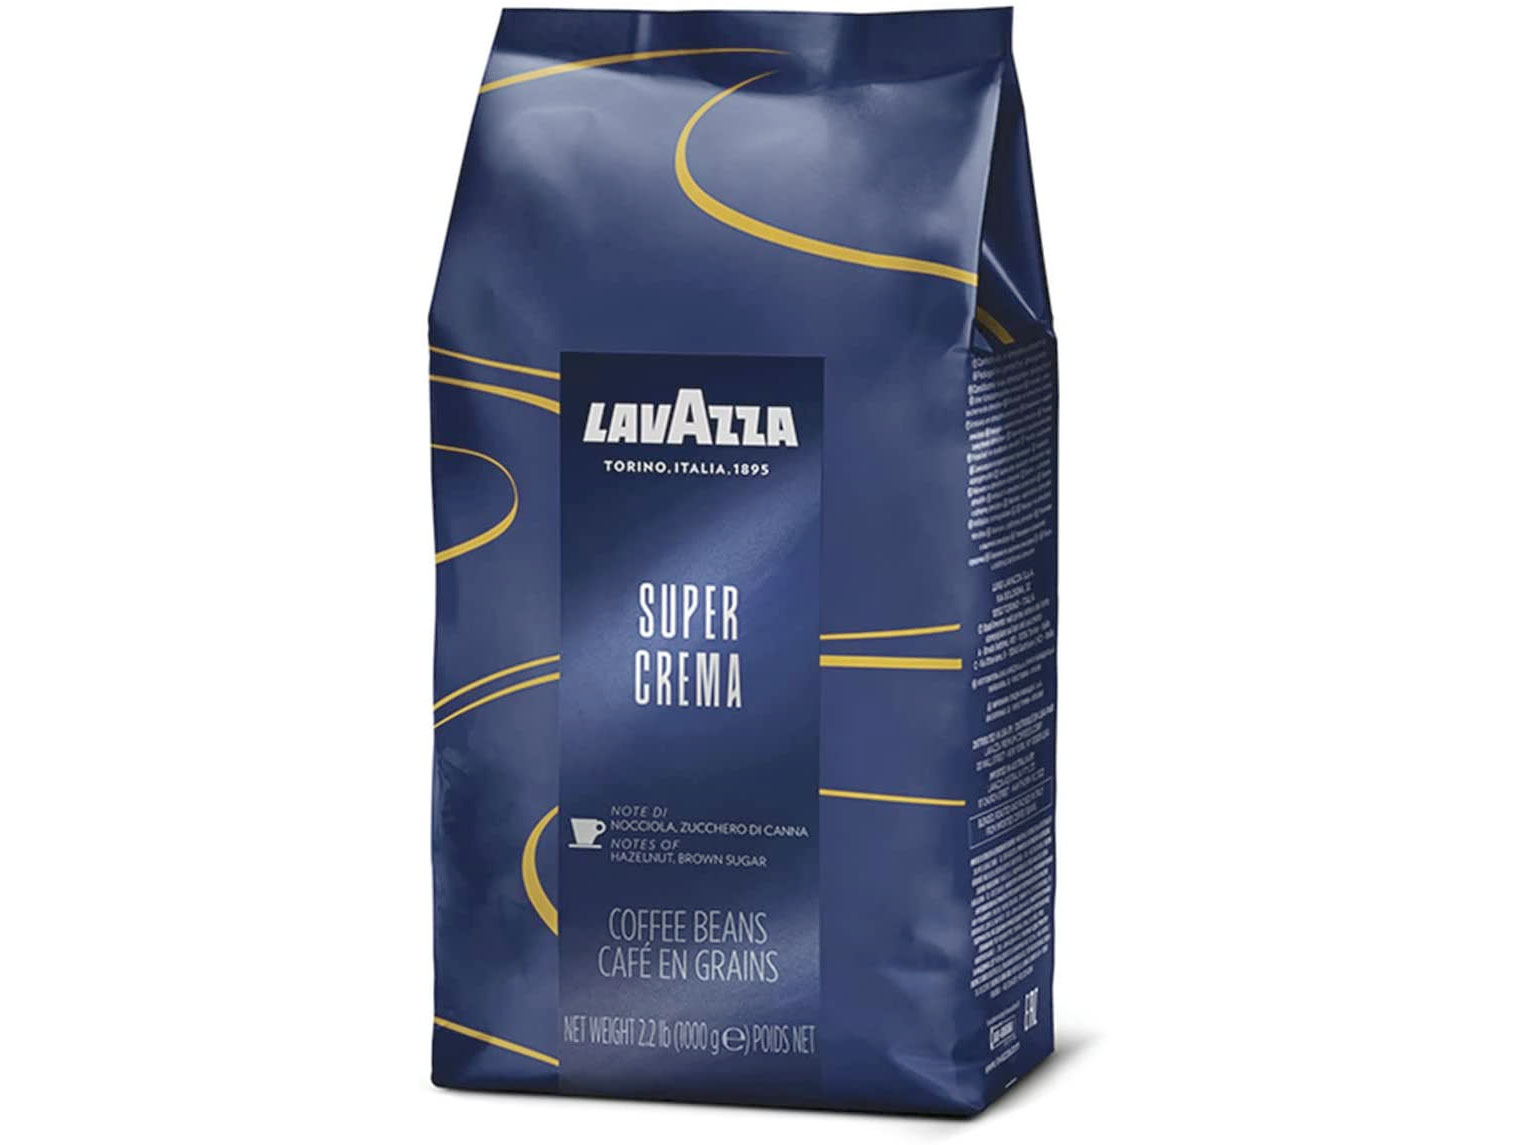 Amazon：Lavazza Super Crema Whole Bean Coffee Blend (1kg)只賣$17.10